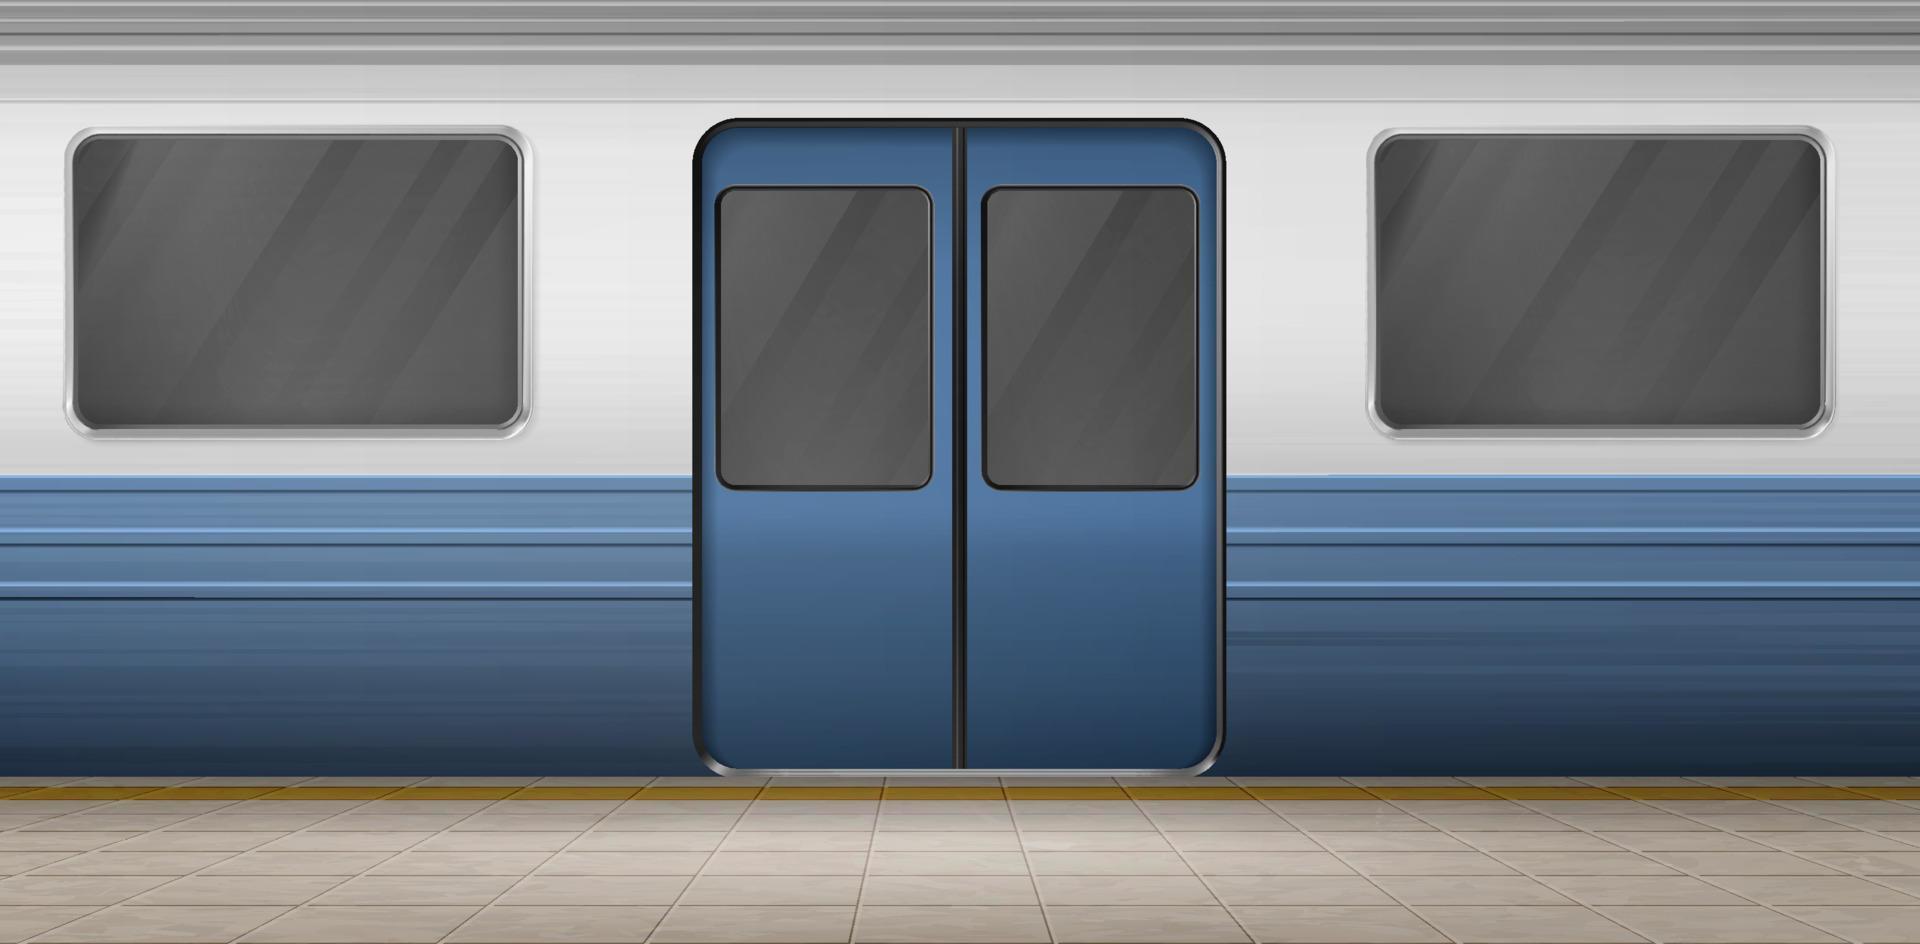 Subway door, metro train on empty station platform vector